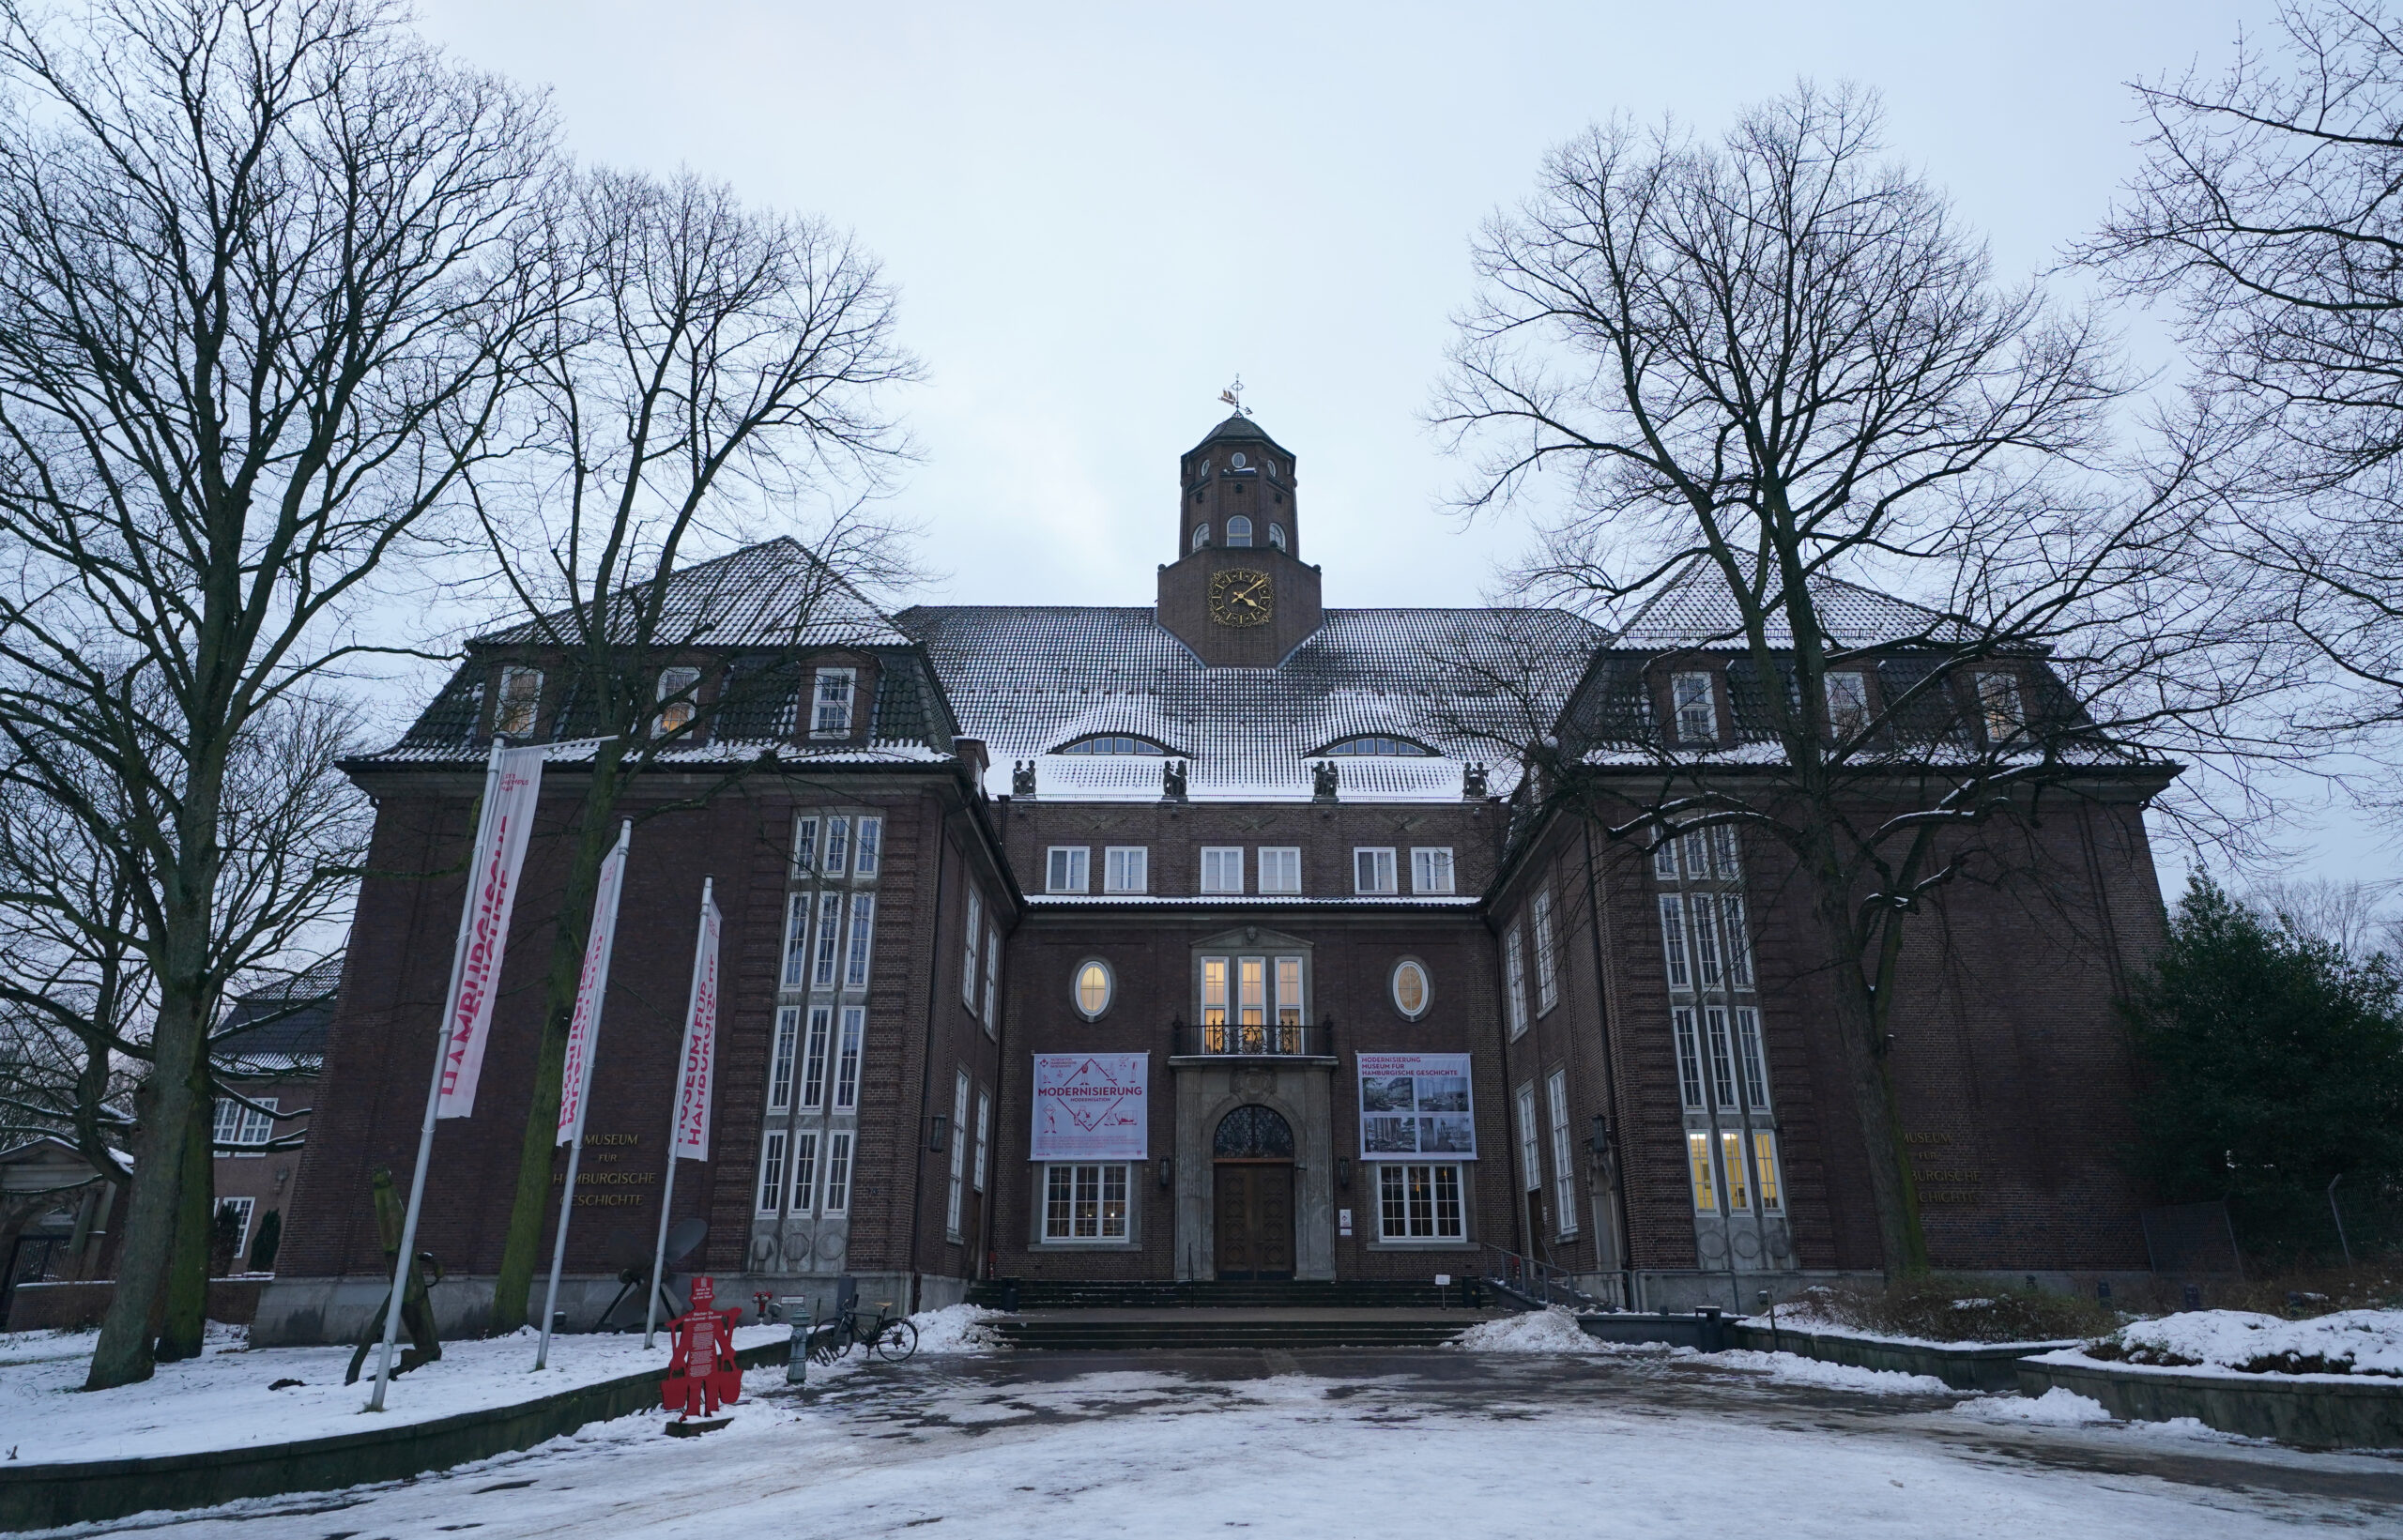 Blick auf das Museum für Hamburgische Geschichte. Es liegt Schnee, der Himmel ist bedeckt. Links und rechts stehen kahle Bäume.